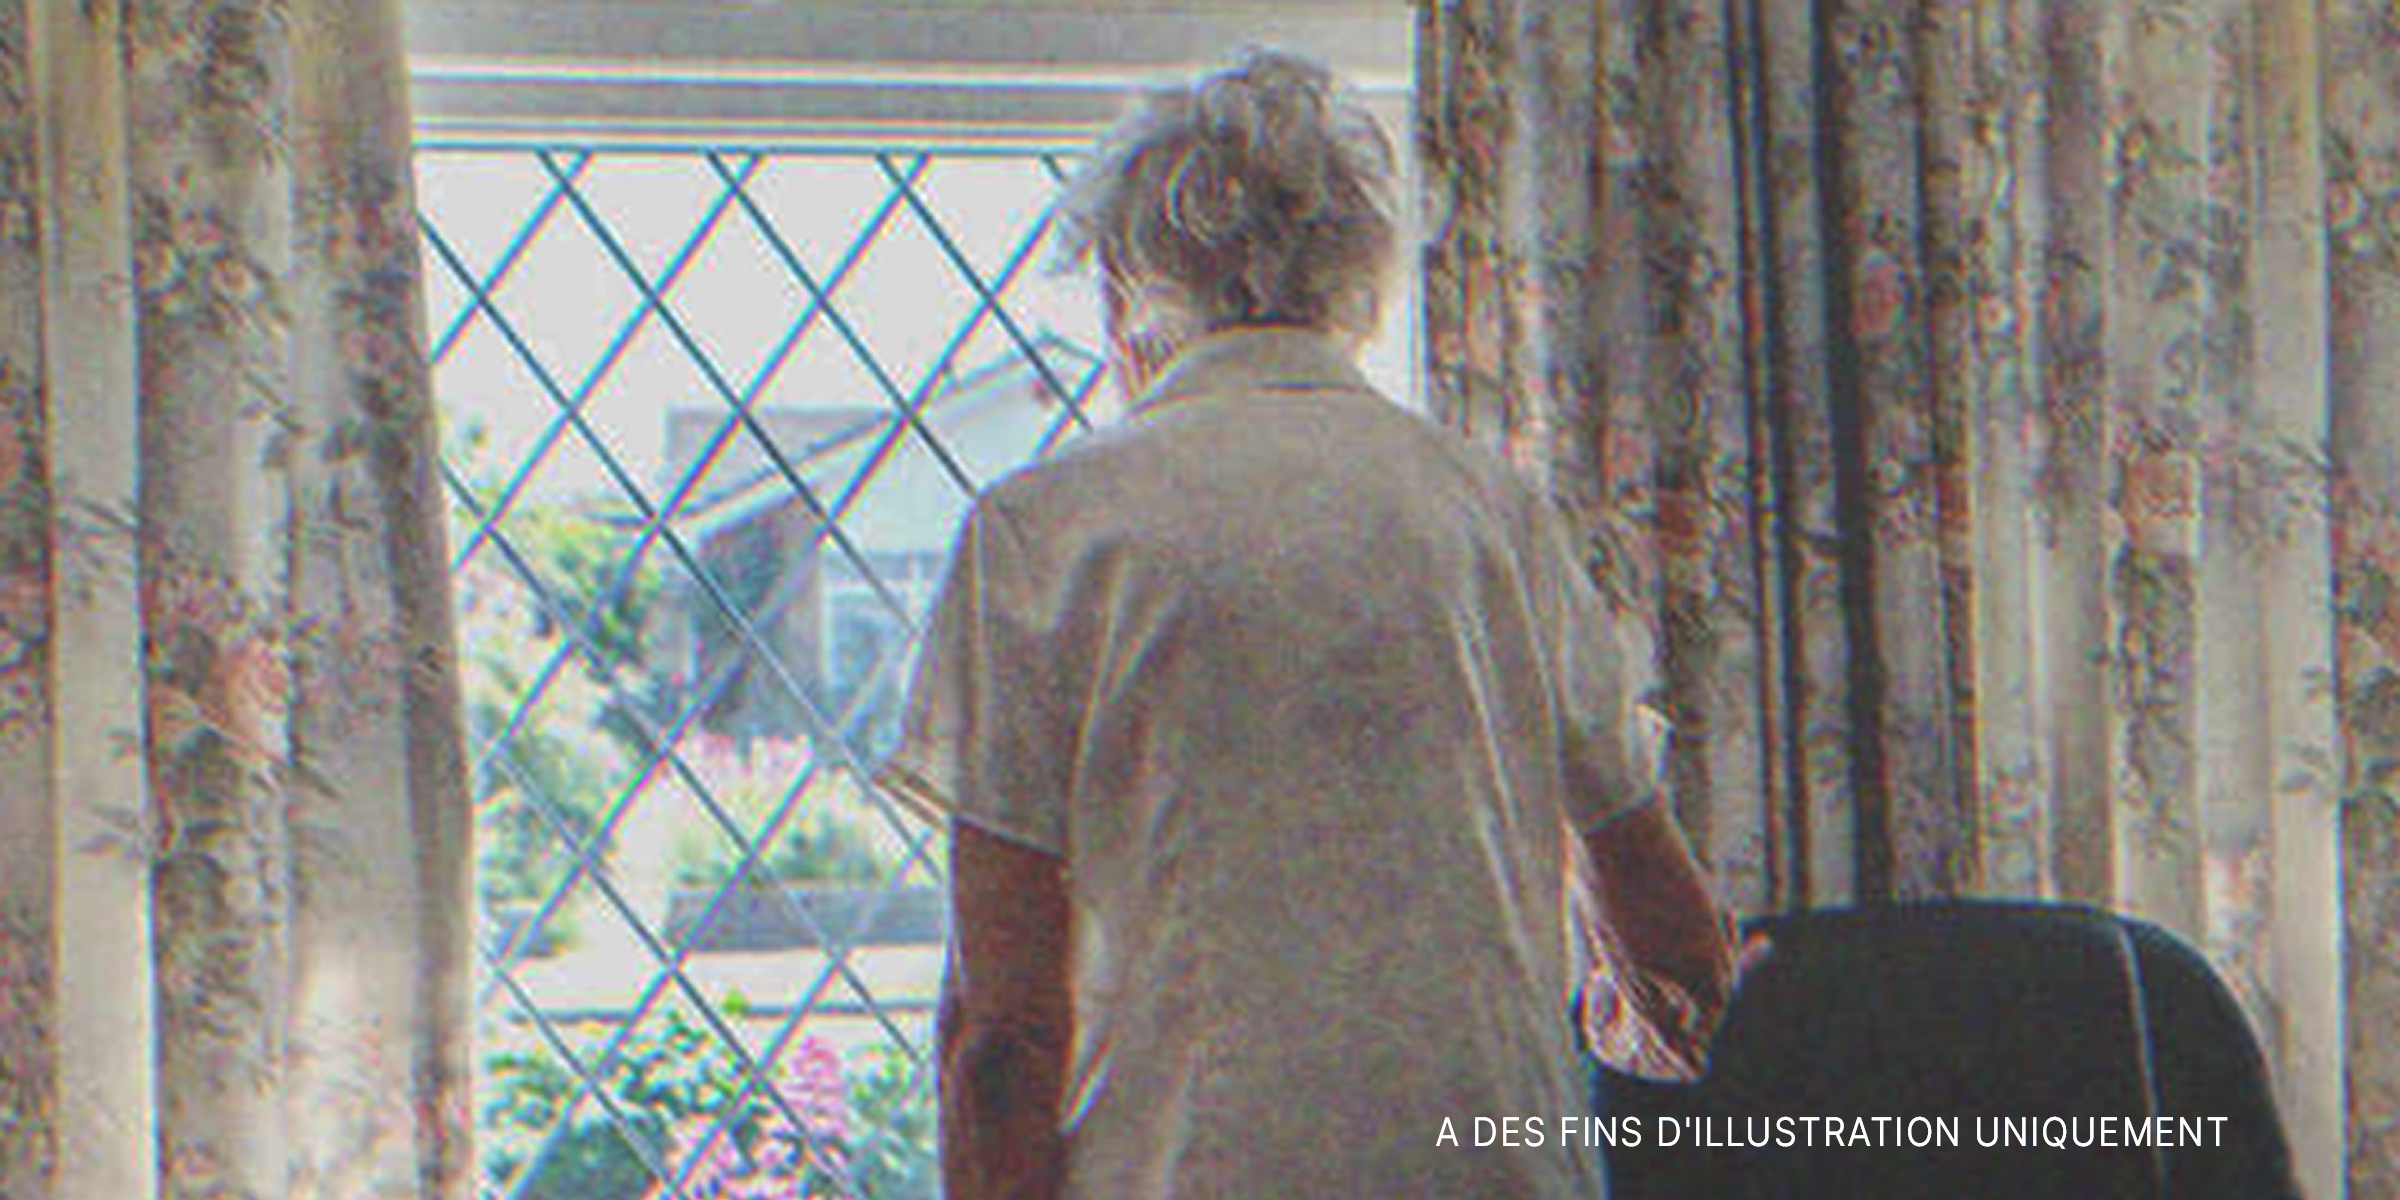 Une vieille dame regardant par la fenêtre | Source : Shutterstock